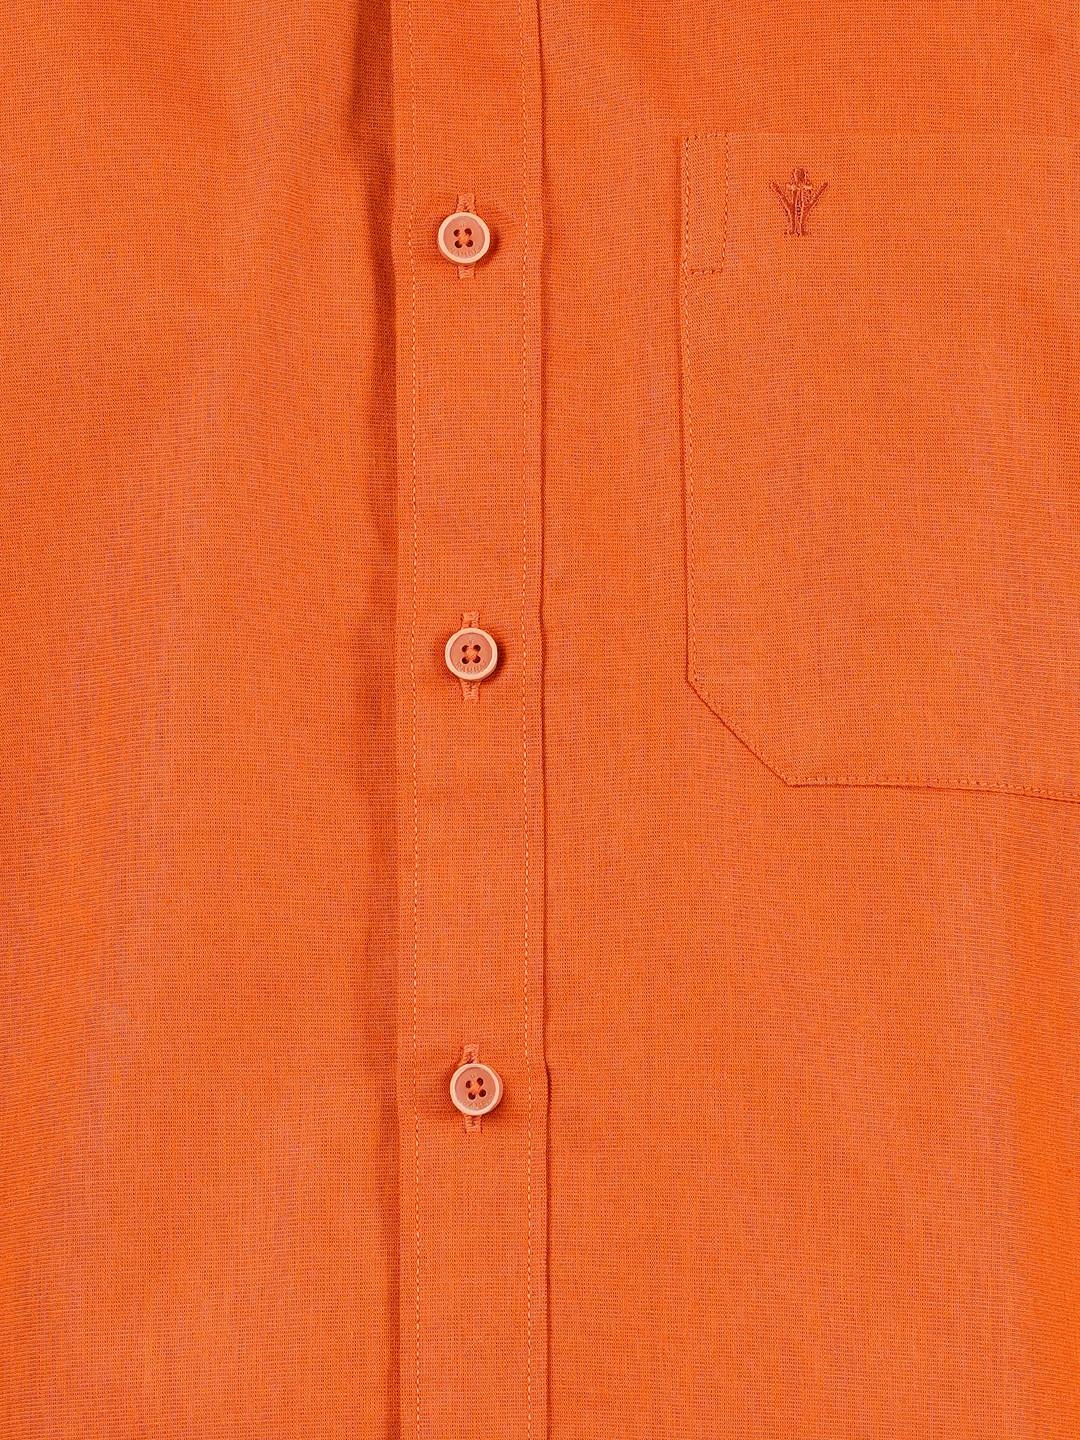 Ramraj Cotton Mens Cotton Orange Half Sleeves Shirt With Jari Dhoti Combo